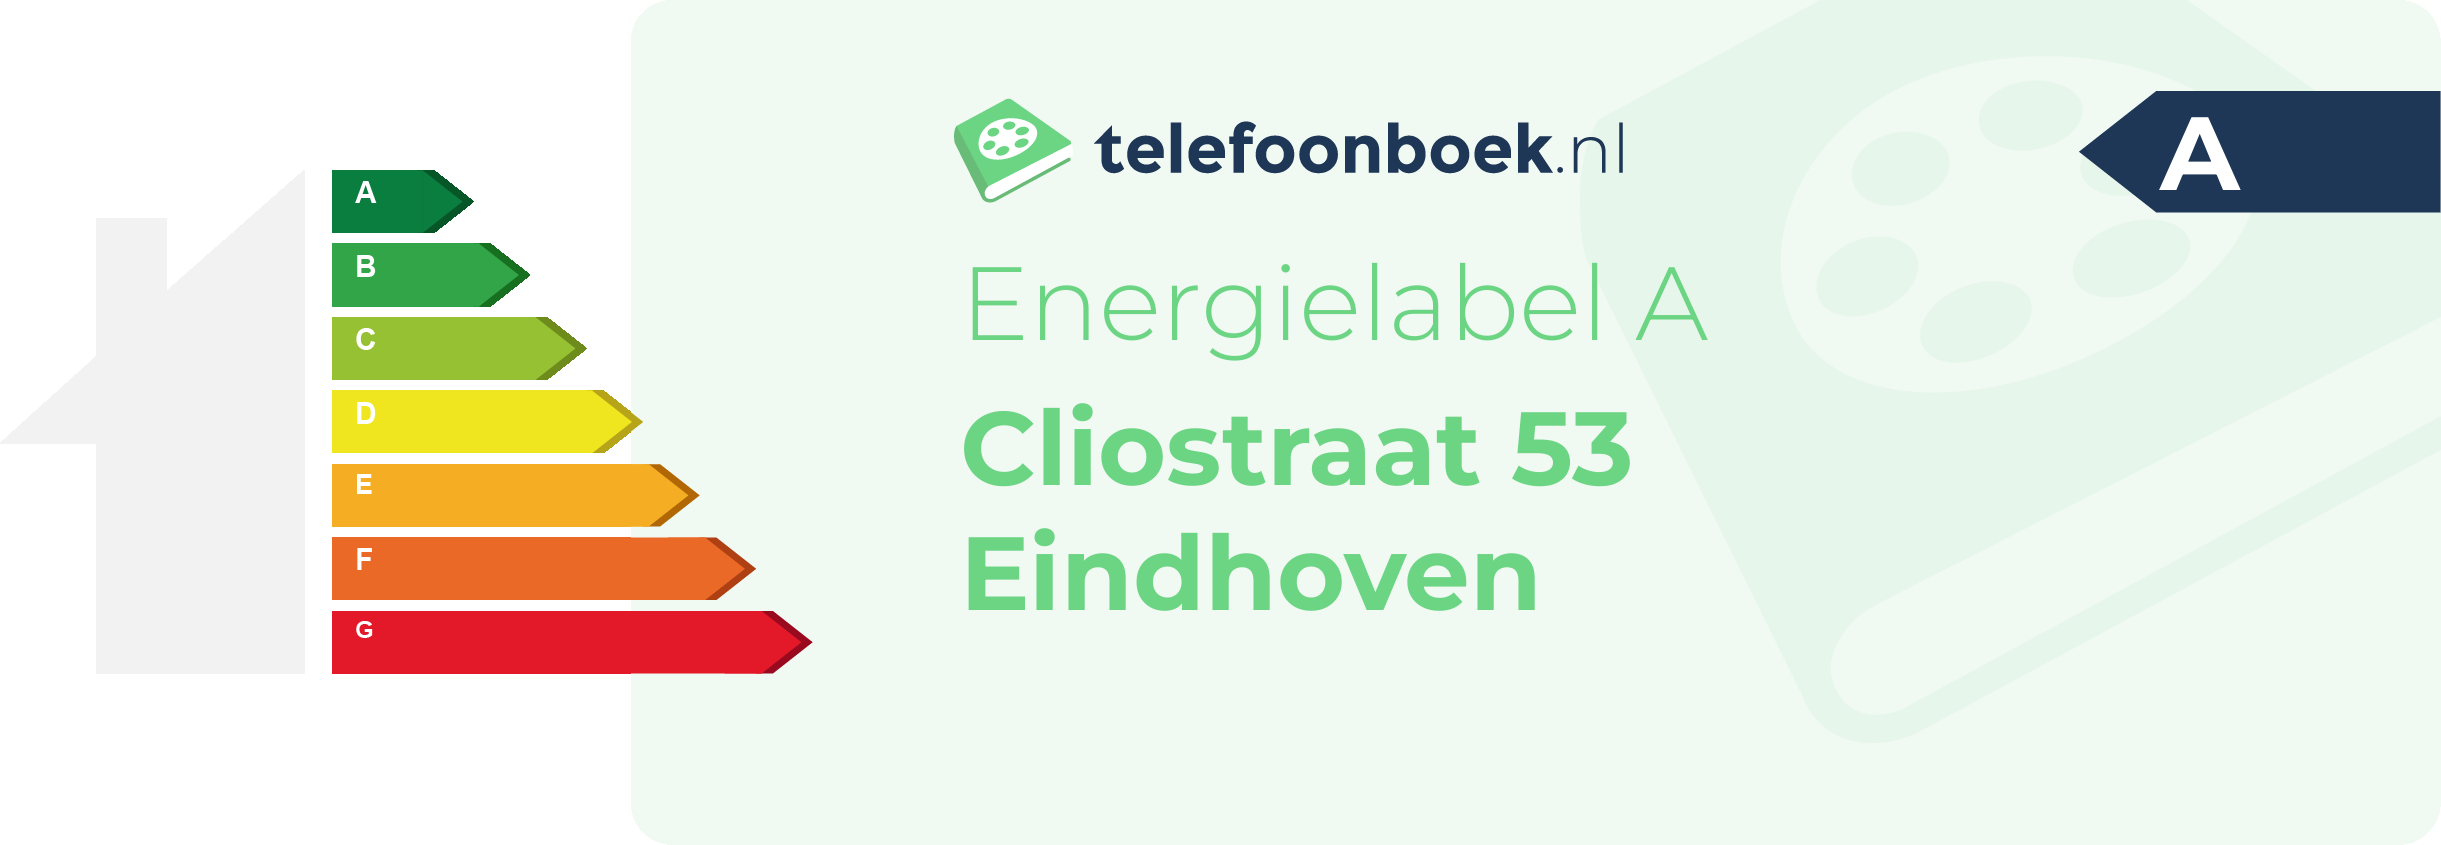 Energielabel Cliostraat 53 Eindhoven